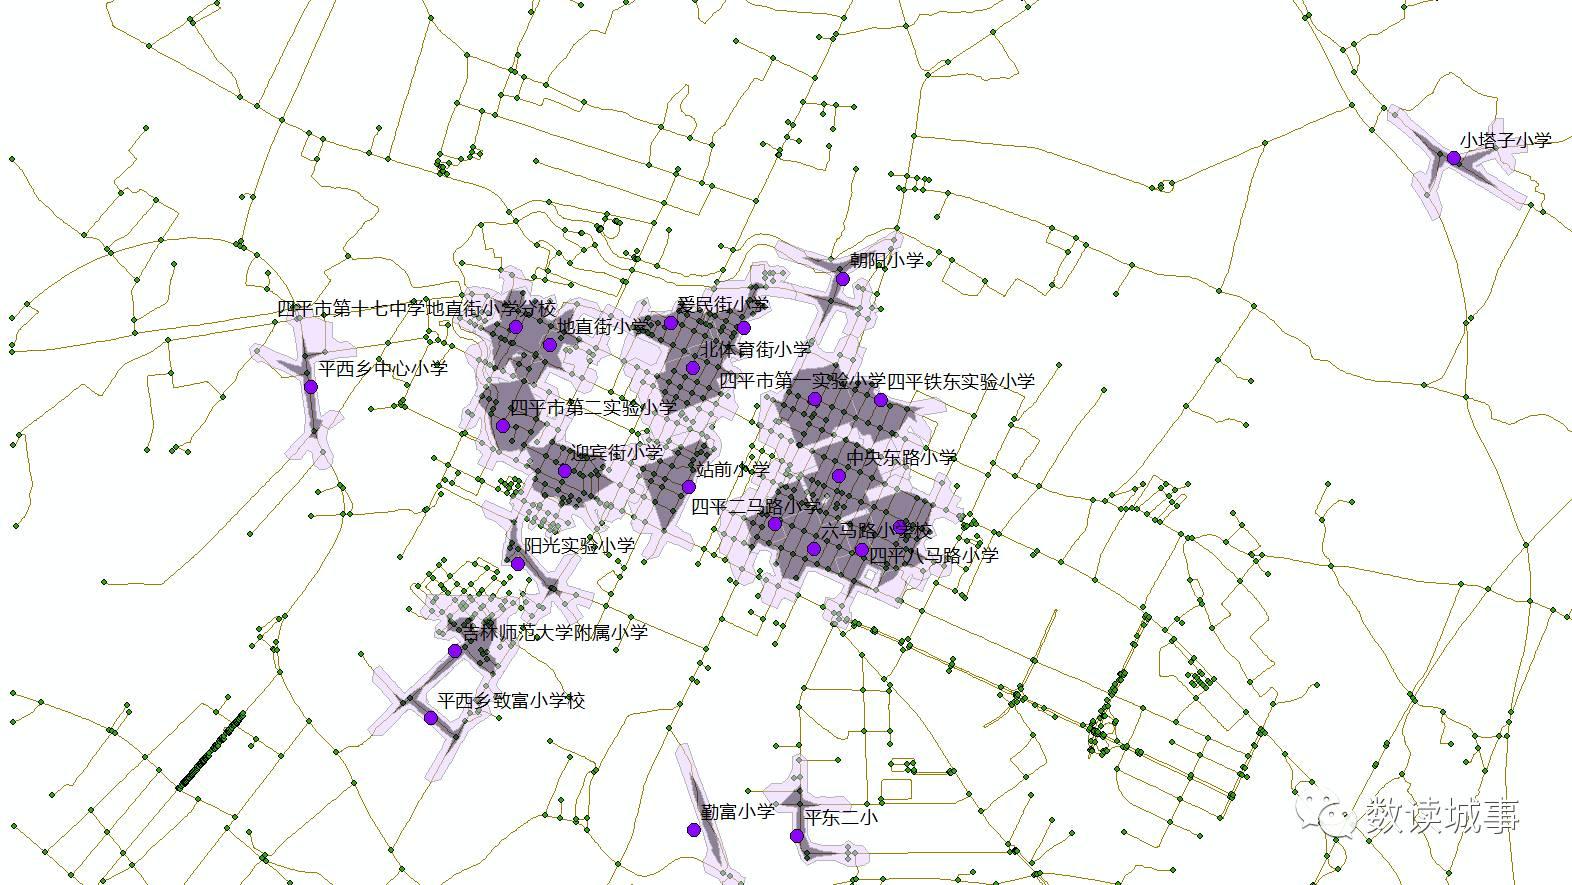 【GIS教程】空间数据应用分析教程2-基本空间